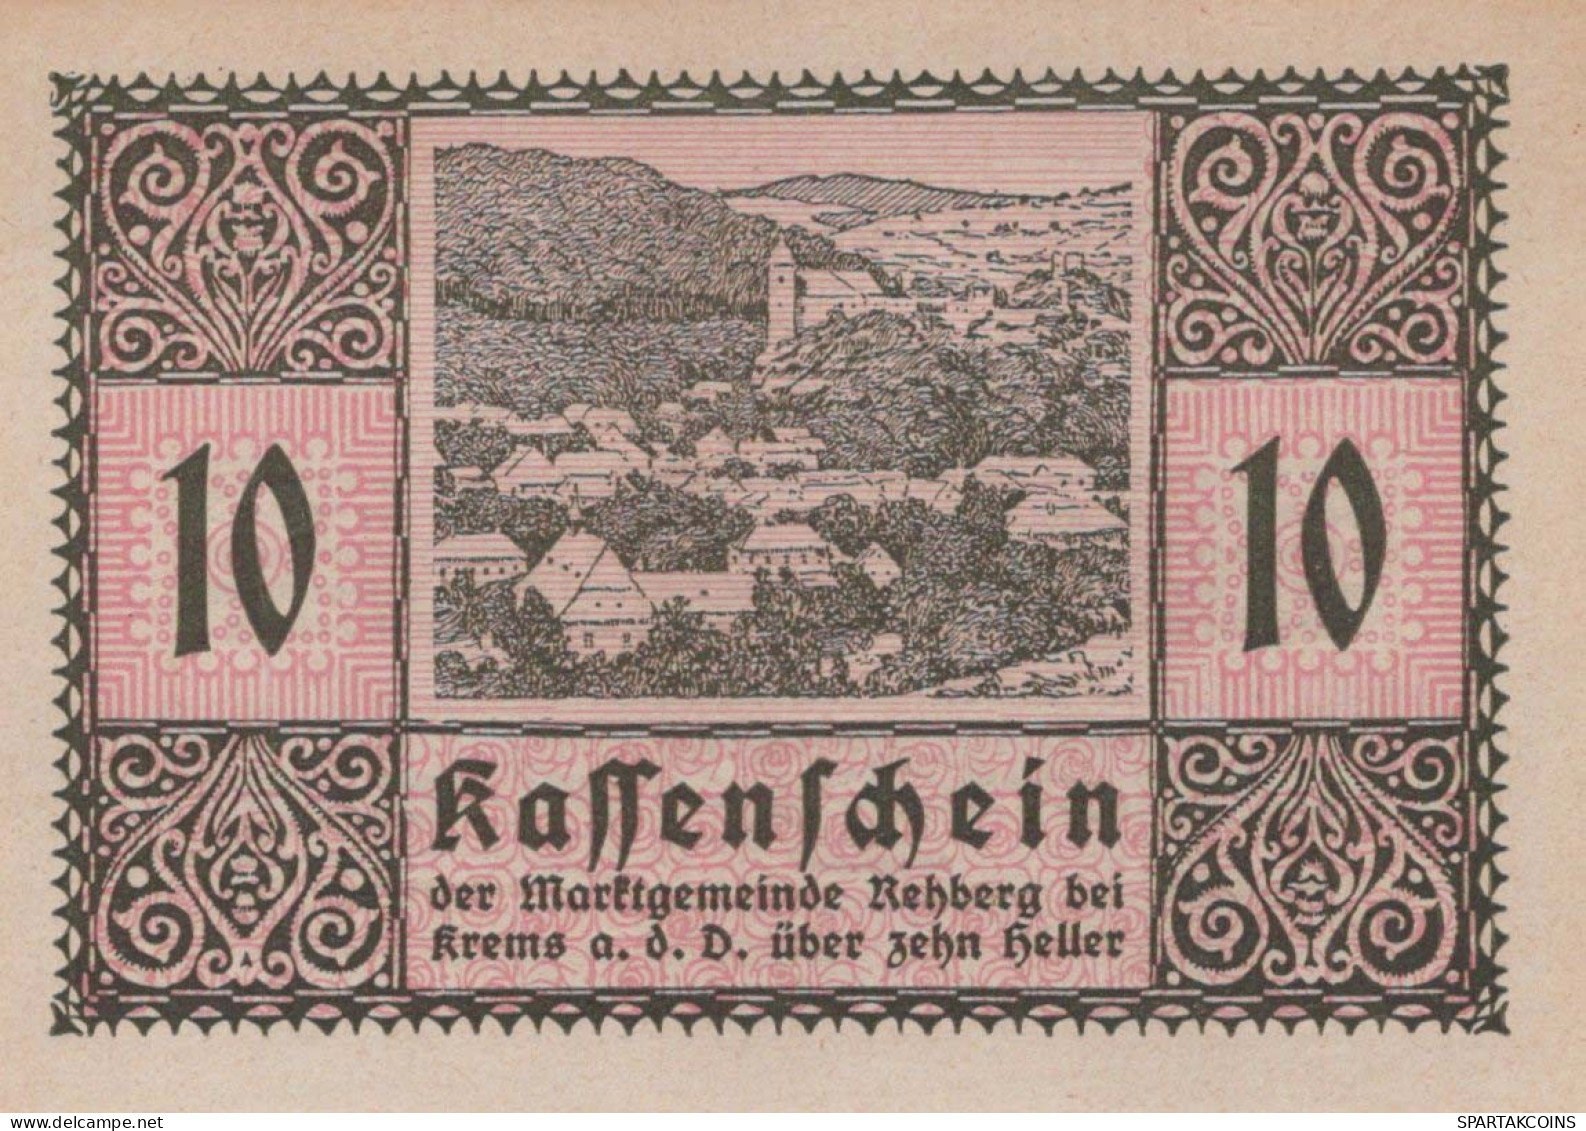 10 HELLER 1920 Stadt REHBERG BEI KREMS AN DER DONAU Niedrigeren Österreich Notgeld Papiergeld Banknote #PG799 - [11] Emissioni Locali